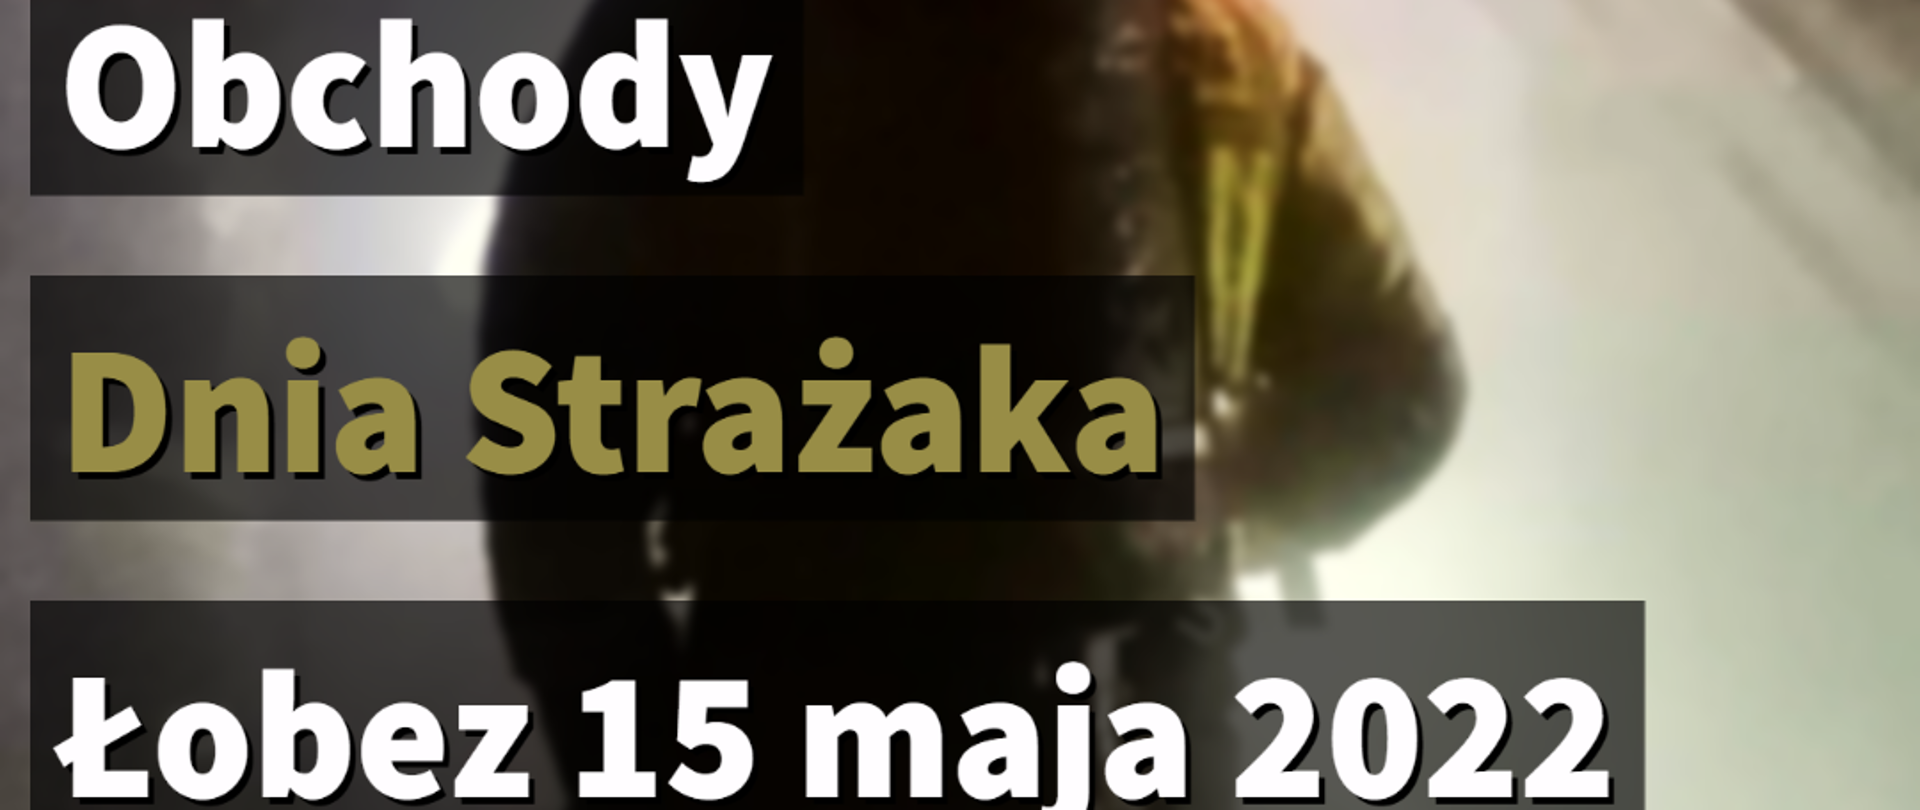 Wojewódzkie Obchody Dnia Strażaka - Łobez 15 maja 2022